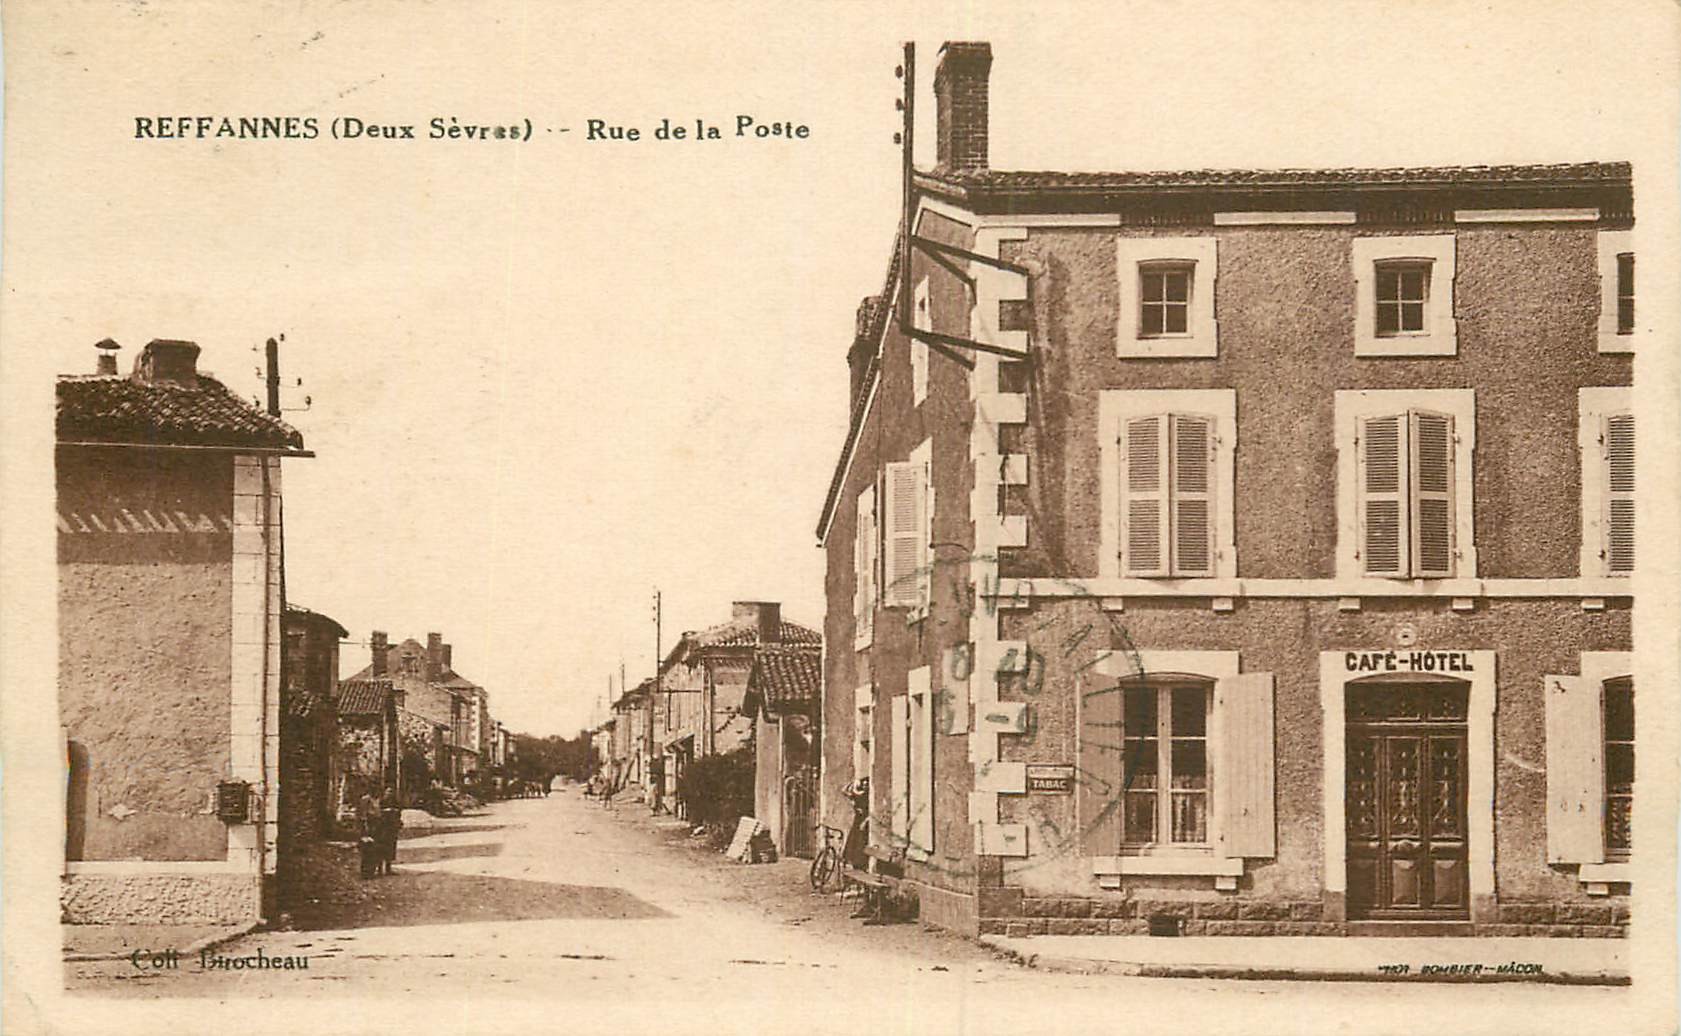 WW 79 REFFANNES. Café Hôtel rue de la Poste 1934